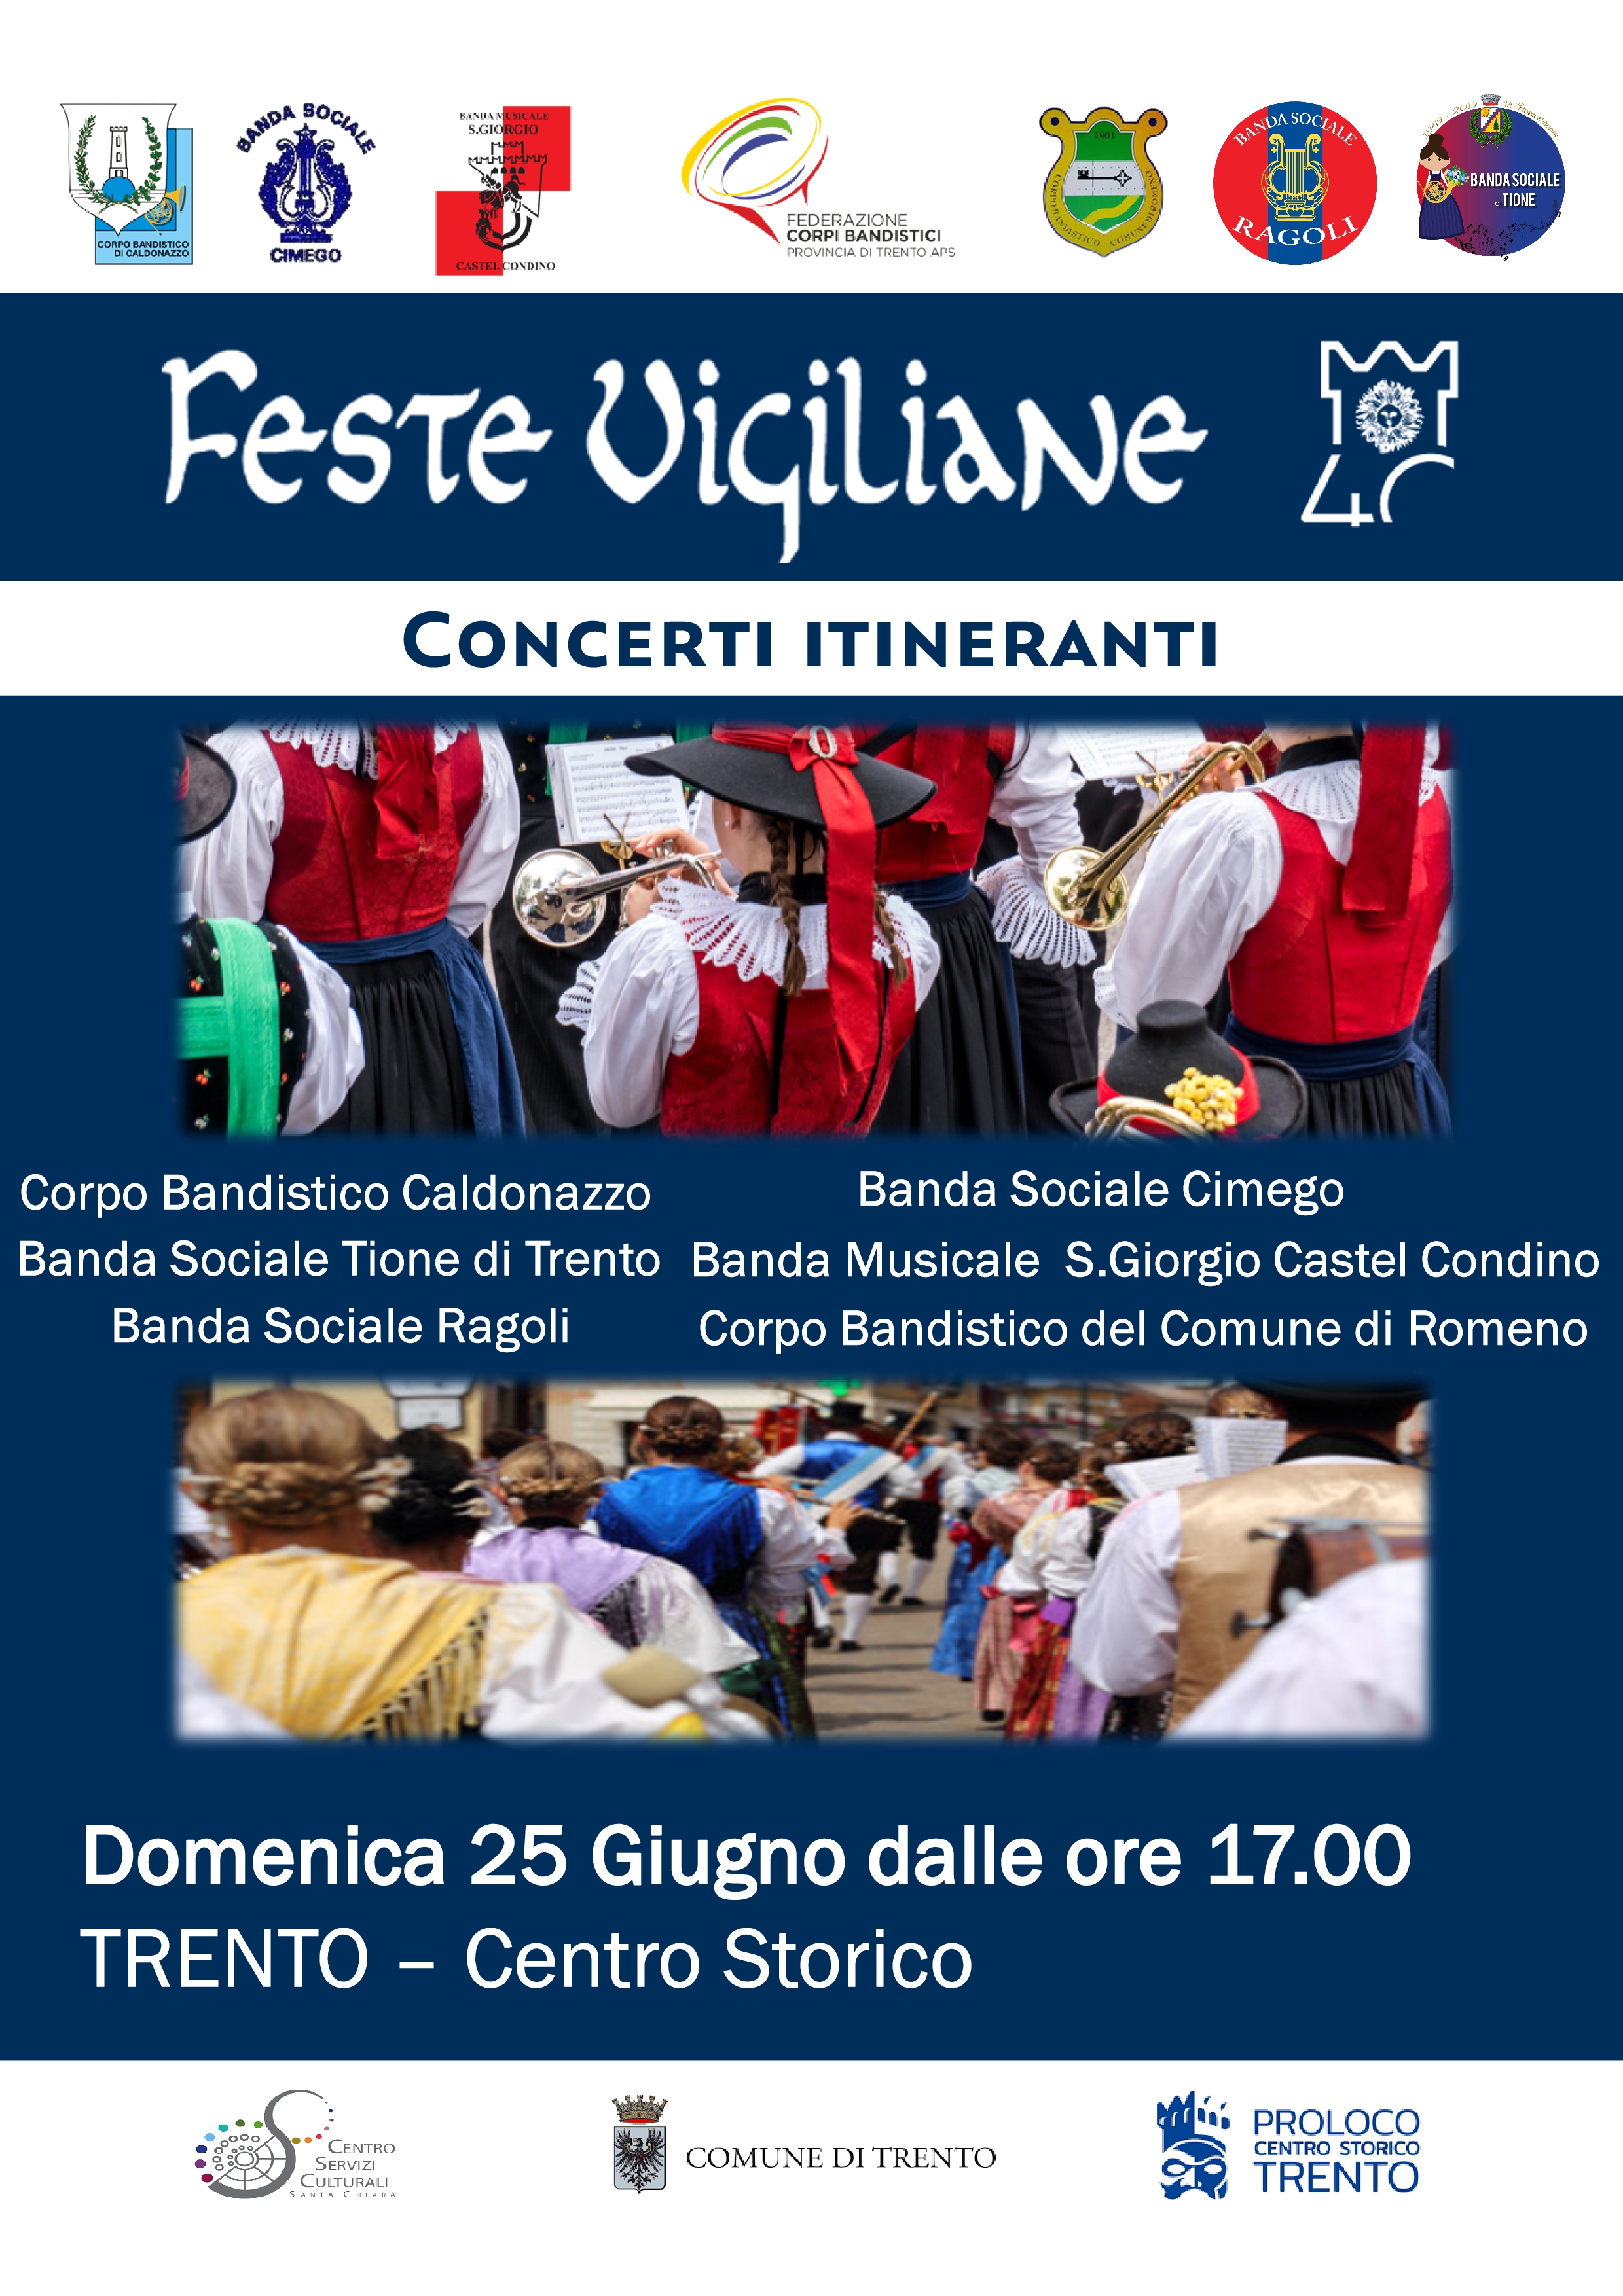 Feste Vigiliane: concertini itineranti nel centro storico della città di Trento